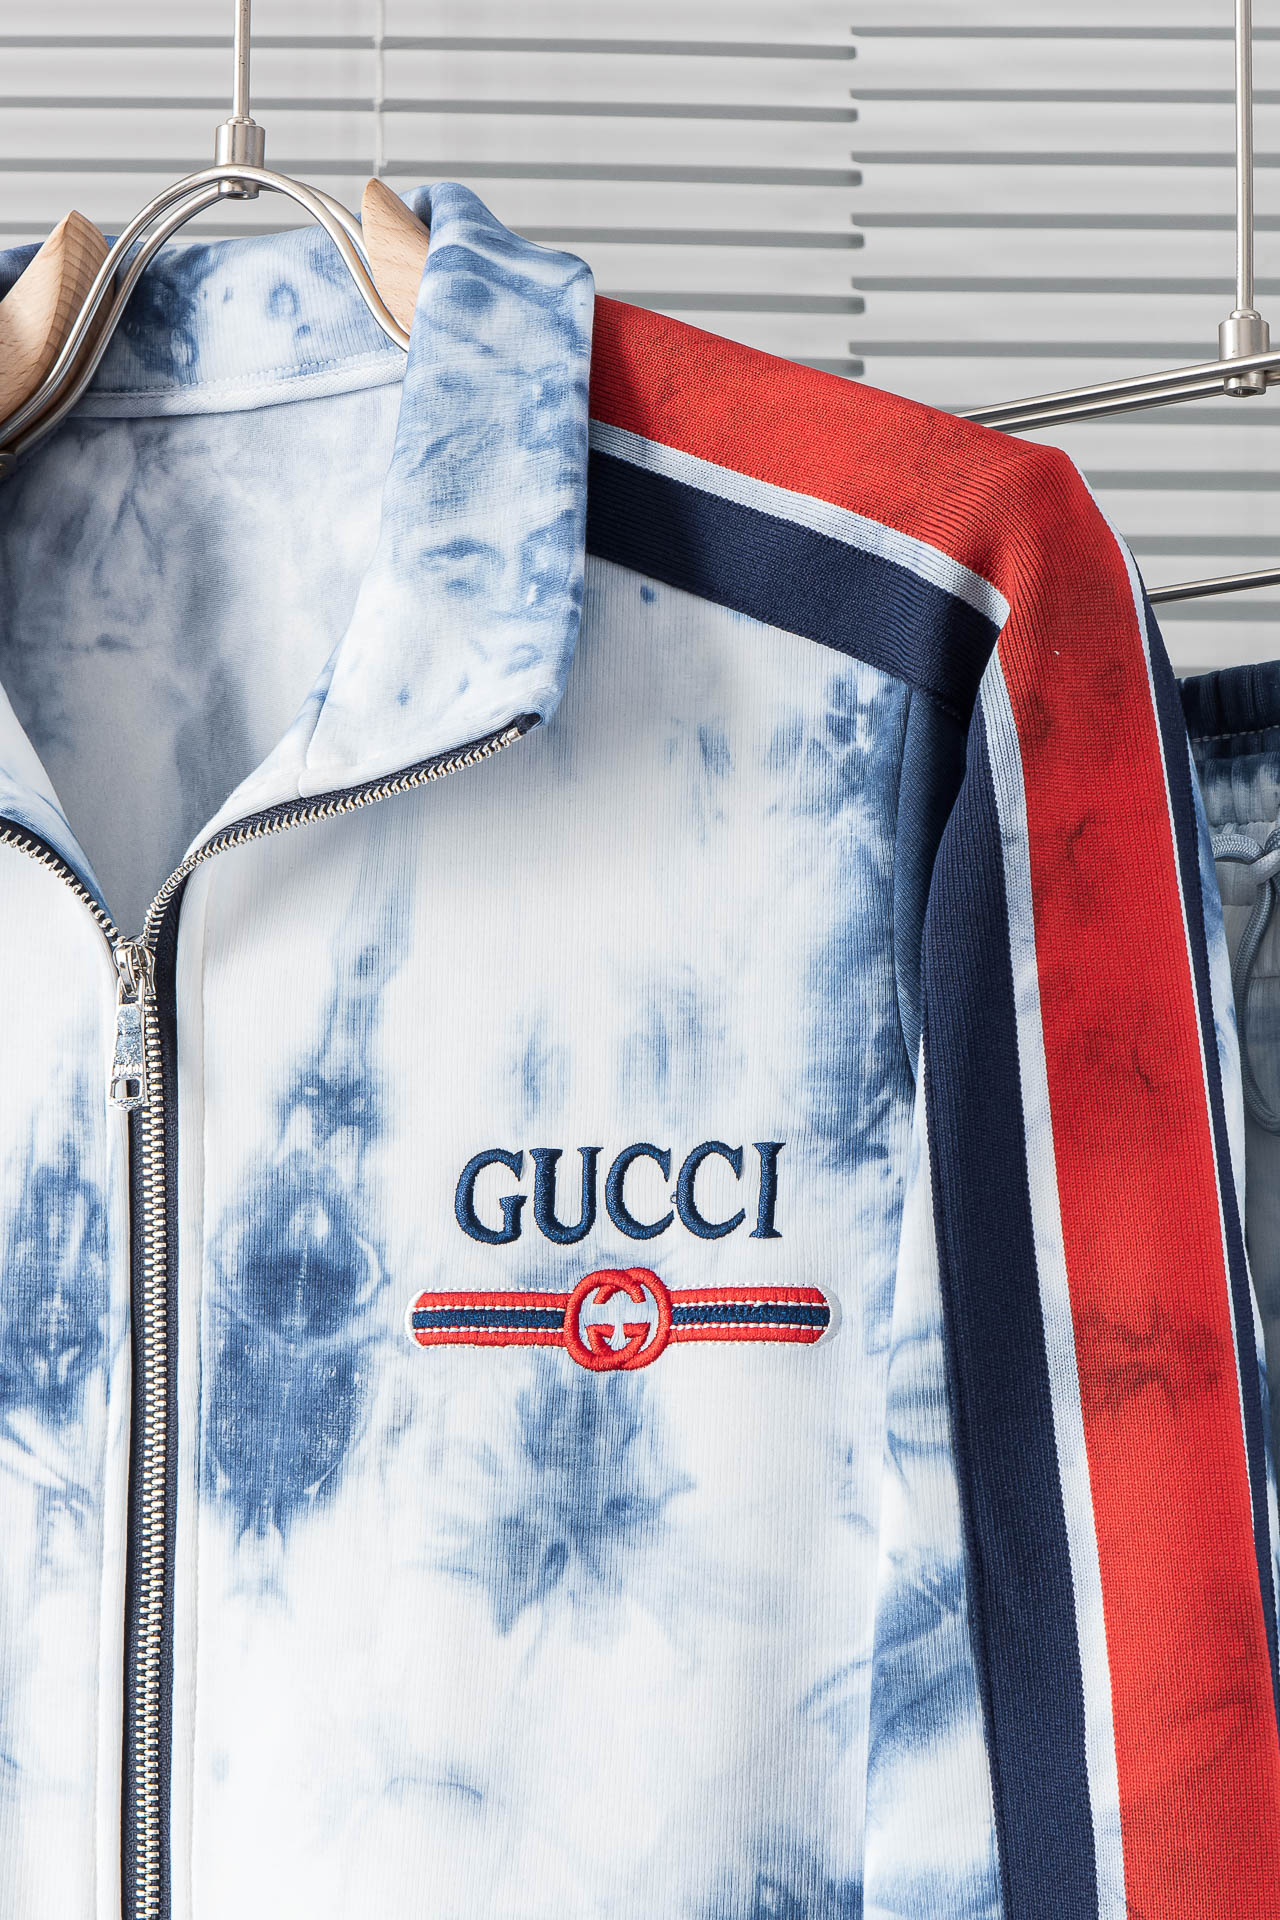 NEW#G1️古驰Gucci24ss休闲运动套装外套+裤子微阔版型潮流时尚感轻松拥有不挑人的好穿看起来很